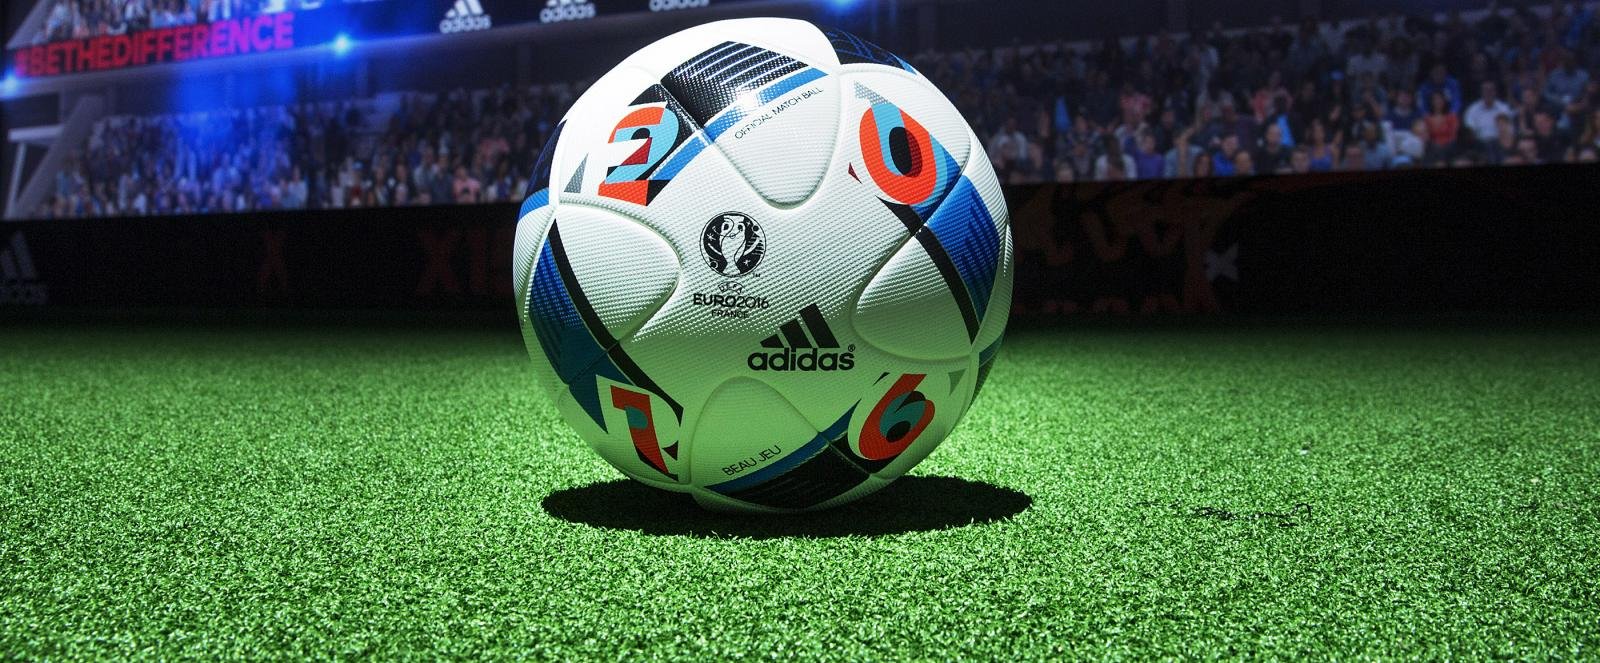 adidas Beau Jeu: Official EURO 2016 match ball